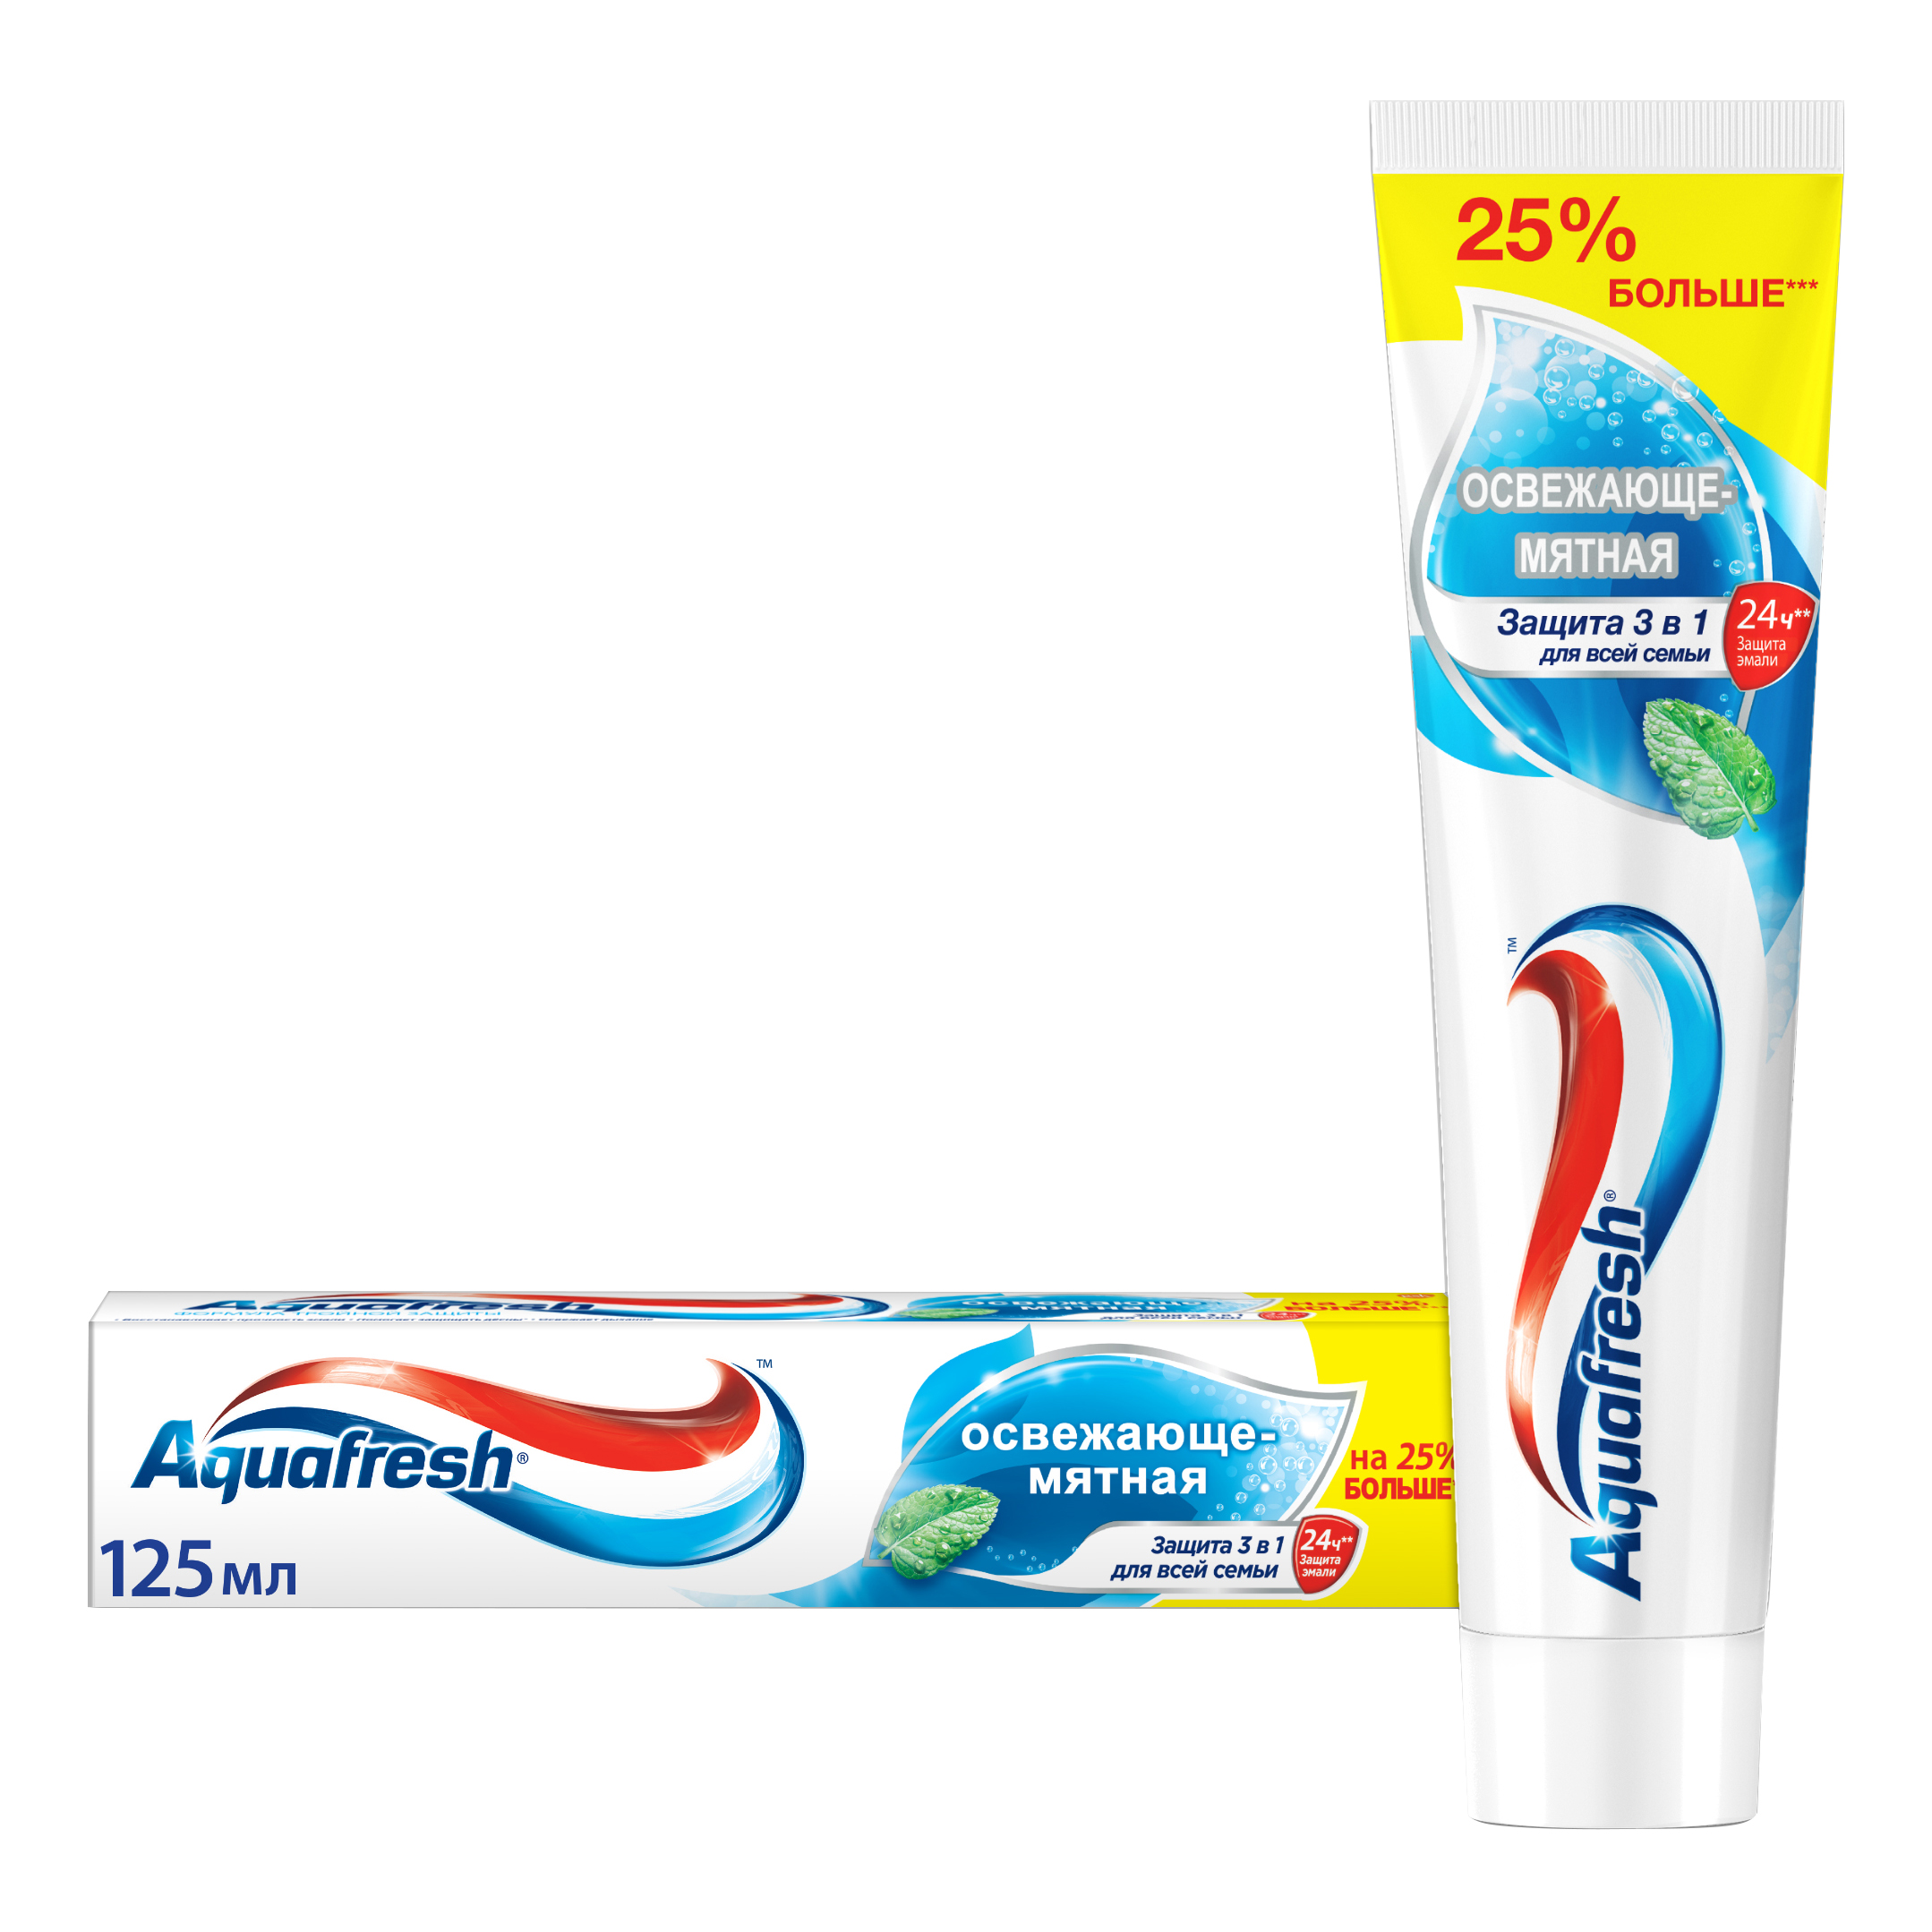 Зубная паста Aquafresh Тройная защита Освежающе-мятная, 125 мл зубная паста мятная 170 гр